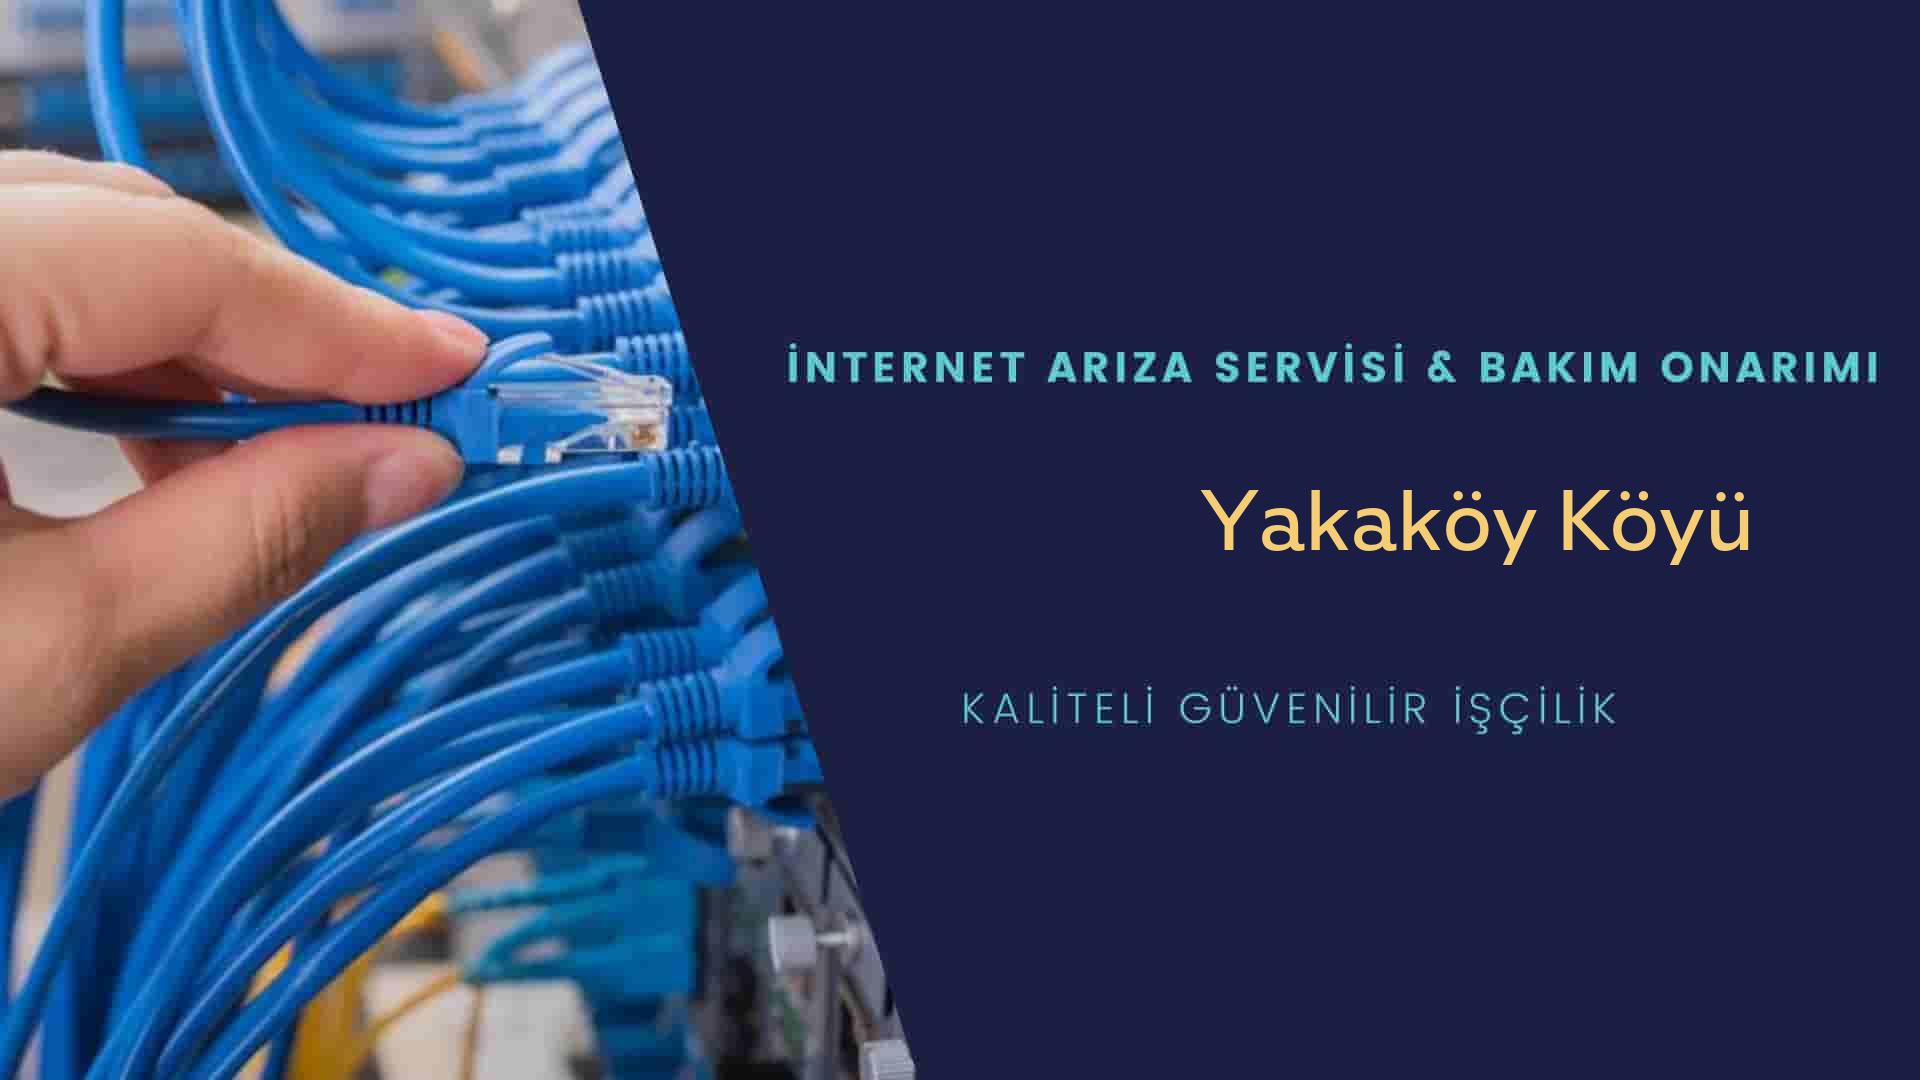 Yakaköy Köyü internet kablosu çekimi yapan yerler veya elektrikçiler mi? arıyorsunuz doğru yerdesiniz o zaman sizlere 7/24 yardımcı olacak profesyonel ustalarımız bir telefon kadar yakındır size.